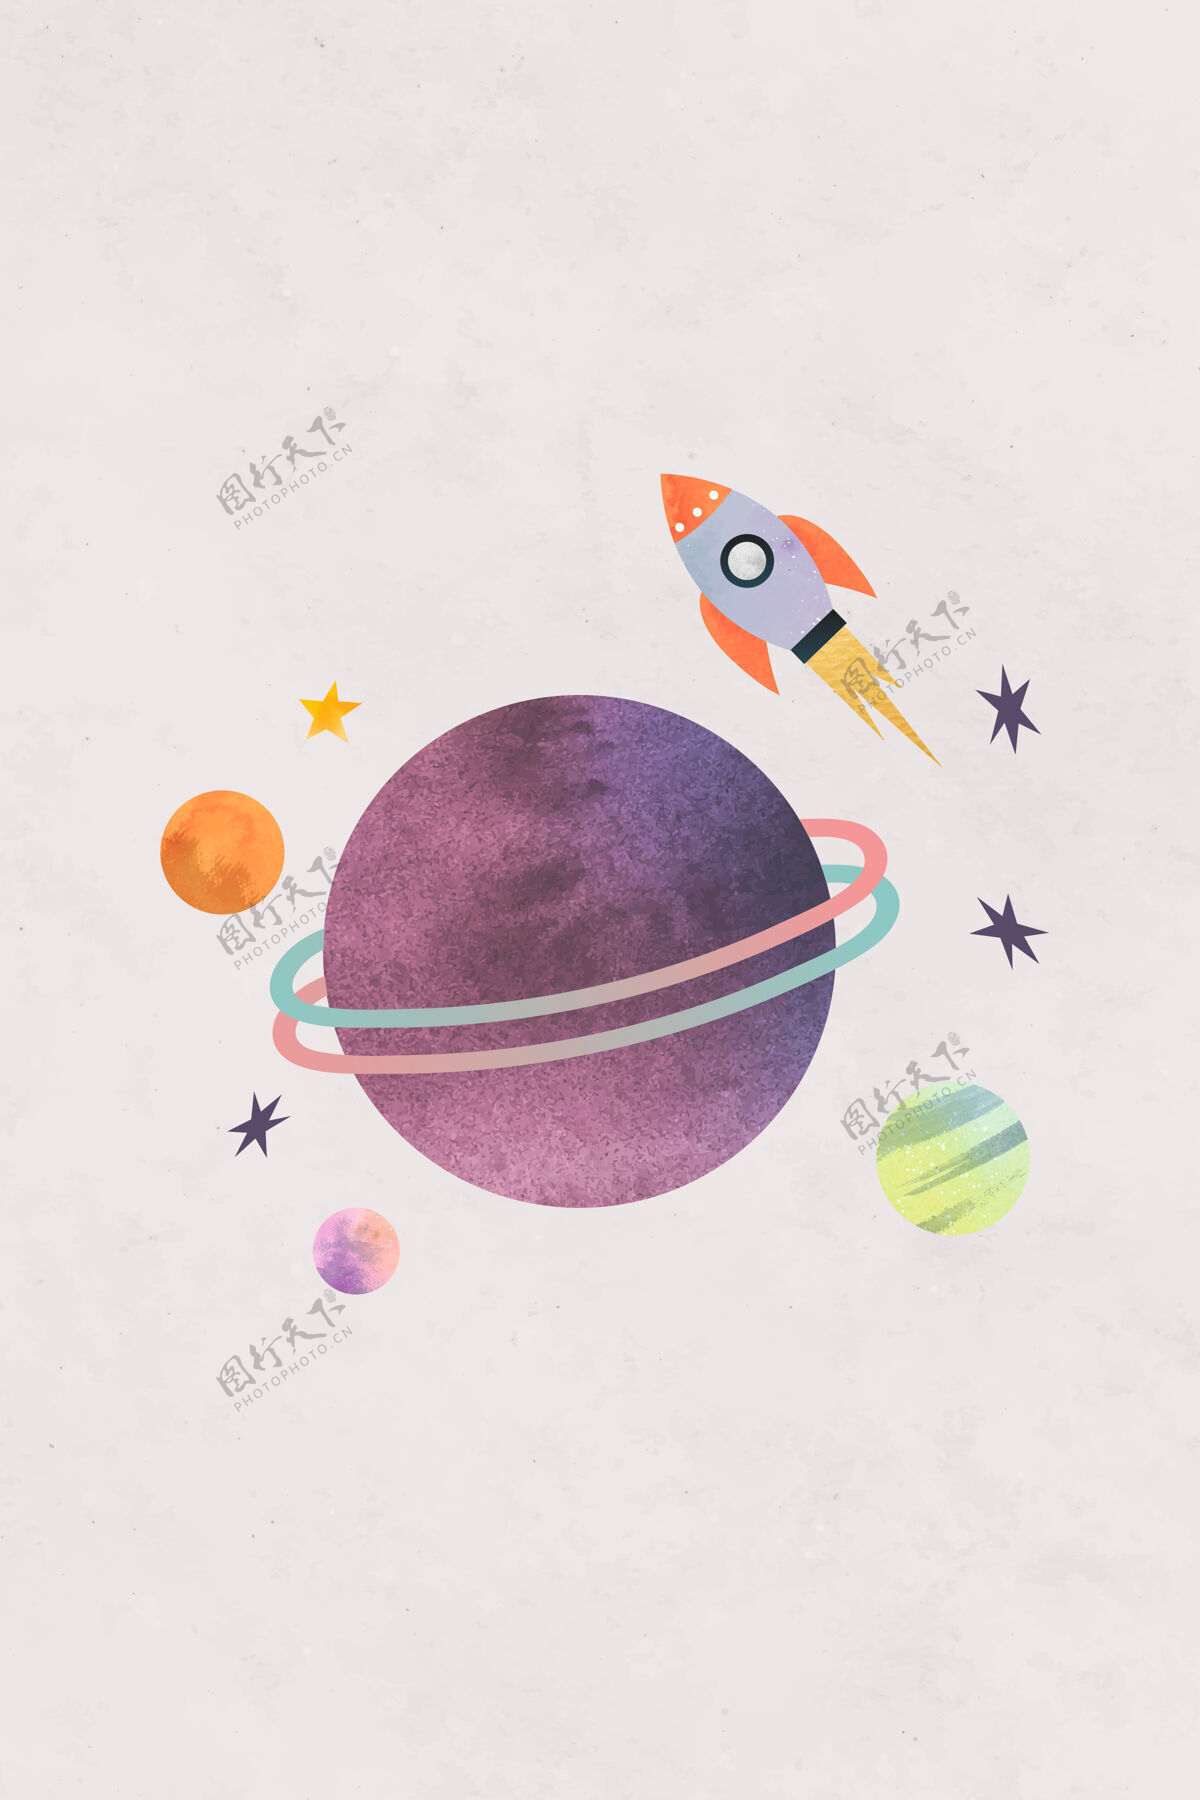 彗星彩色银河水彩涂鸦与火箭粉彩背景幼稚银河系2d